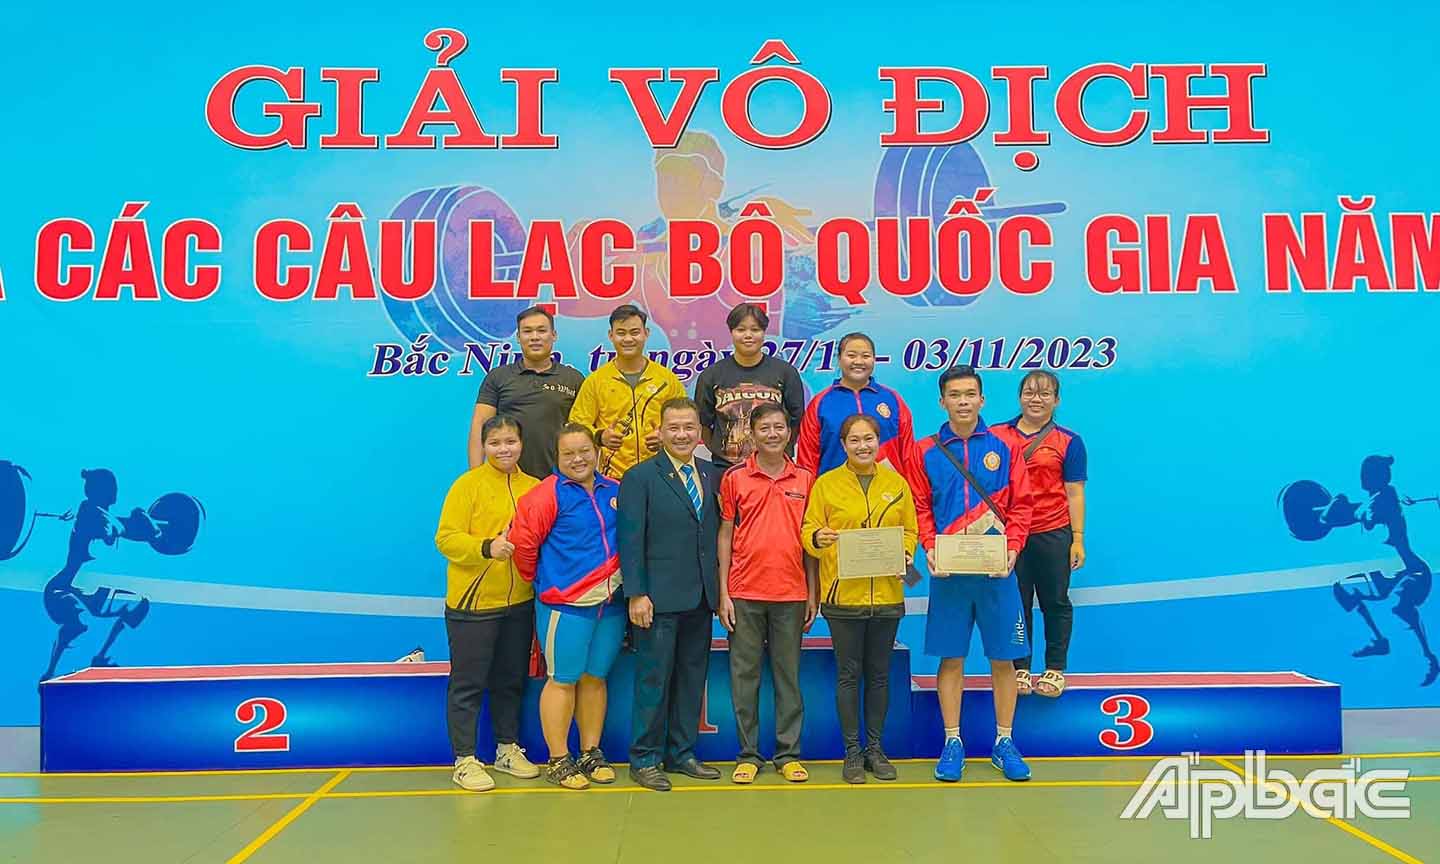 HLV và các VĐV Đội Cử tạ Tiền Giang tham gia thi đấu tại Giải Vô địch Cử tạ các câu lạc bộ quốc gia năm 2023.